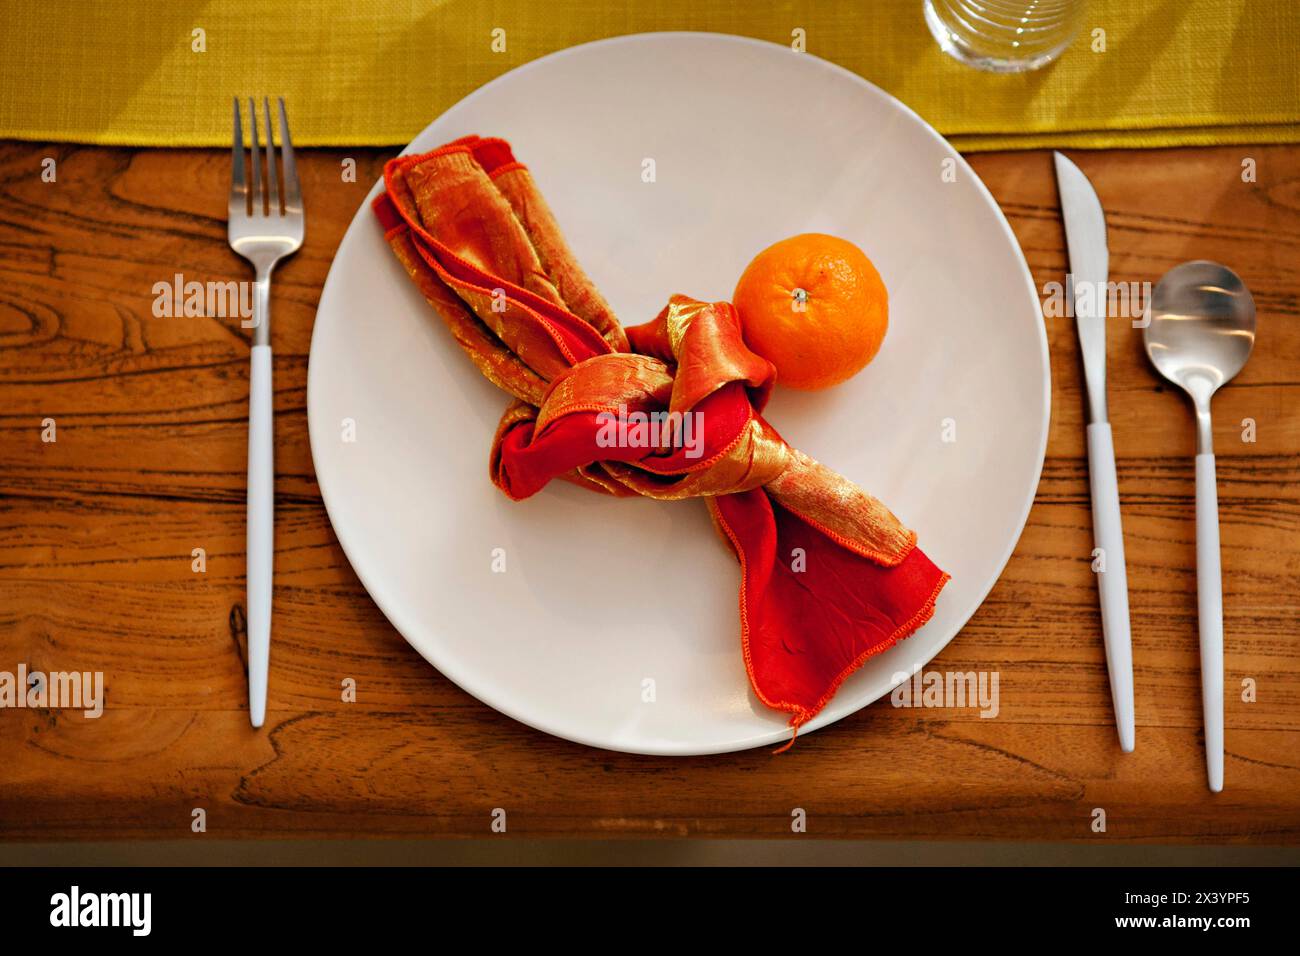 Tavolo rustico con tovagliolo arancione vivace e mandarino fresco Foto Stock